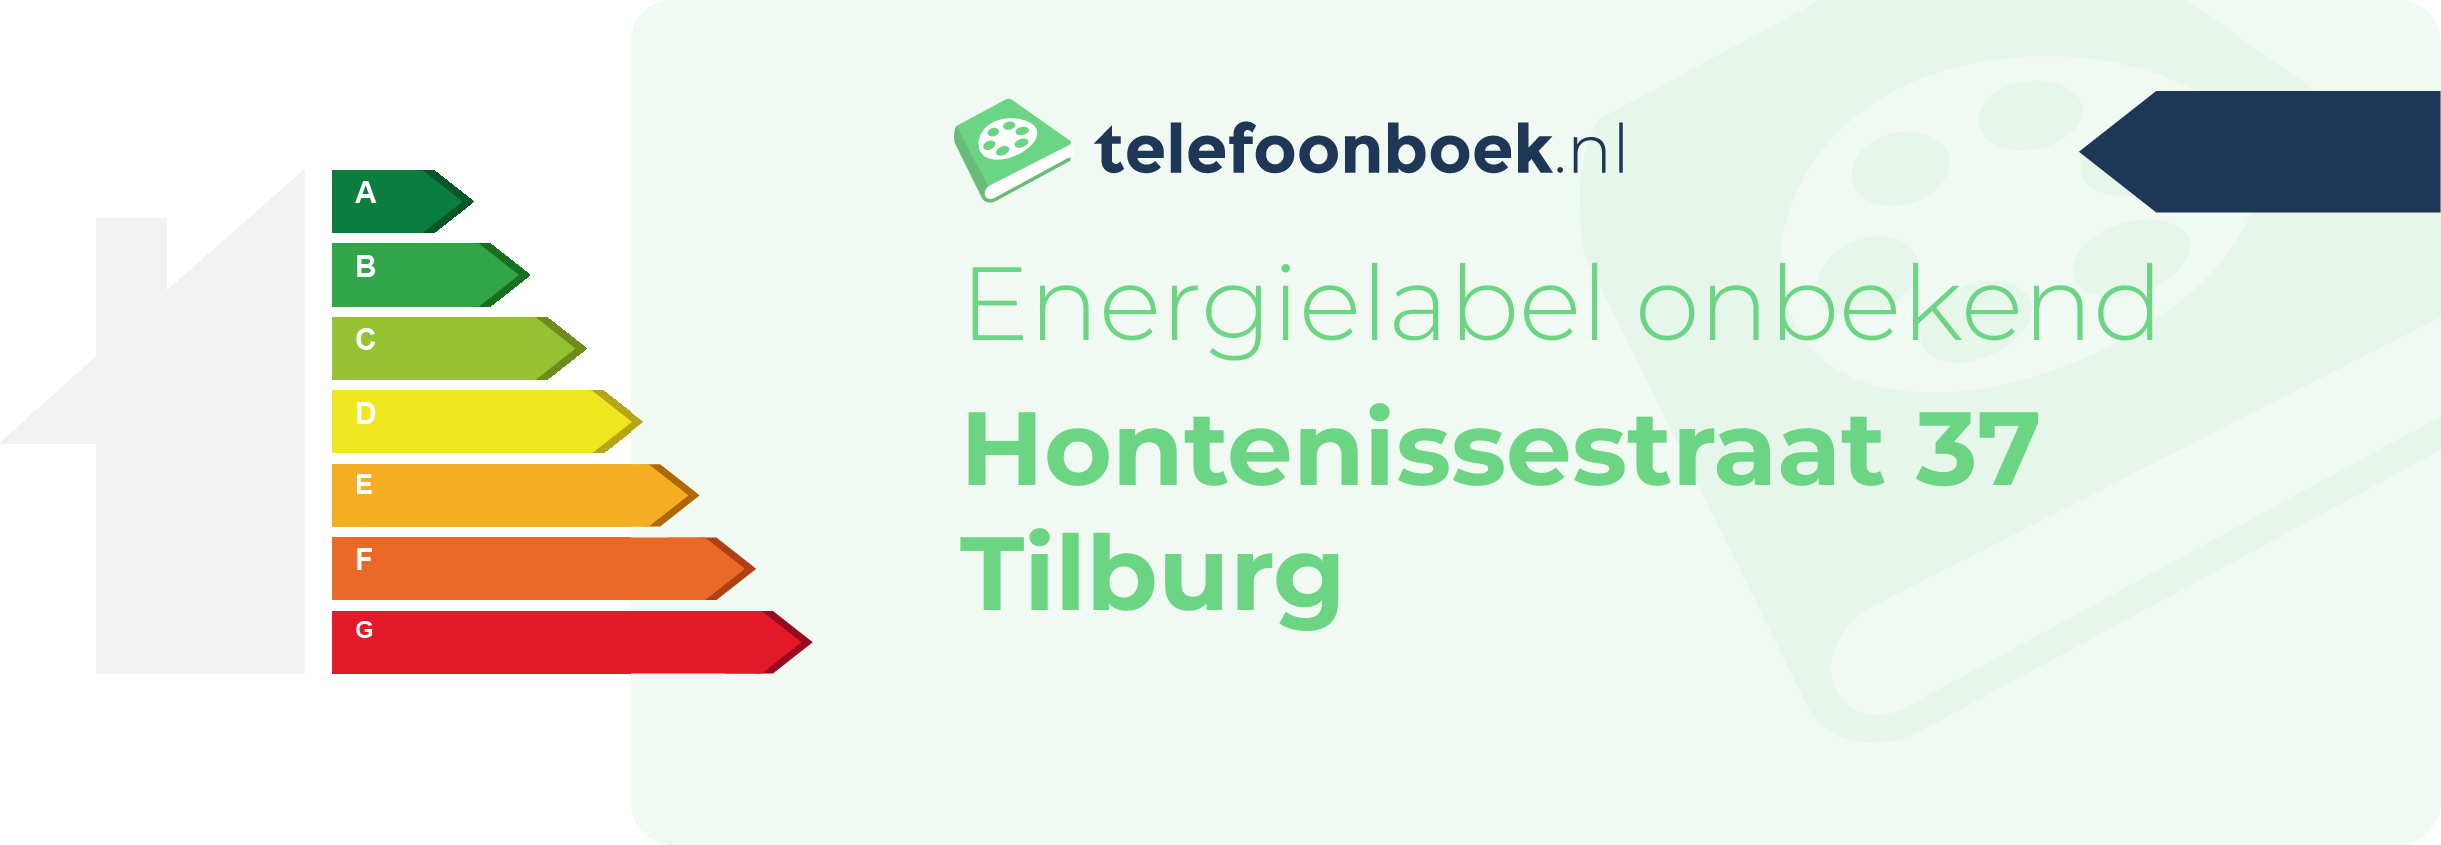 Energielabel Hontenissestraat 37 Tilburg